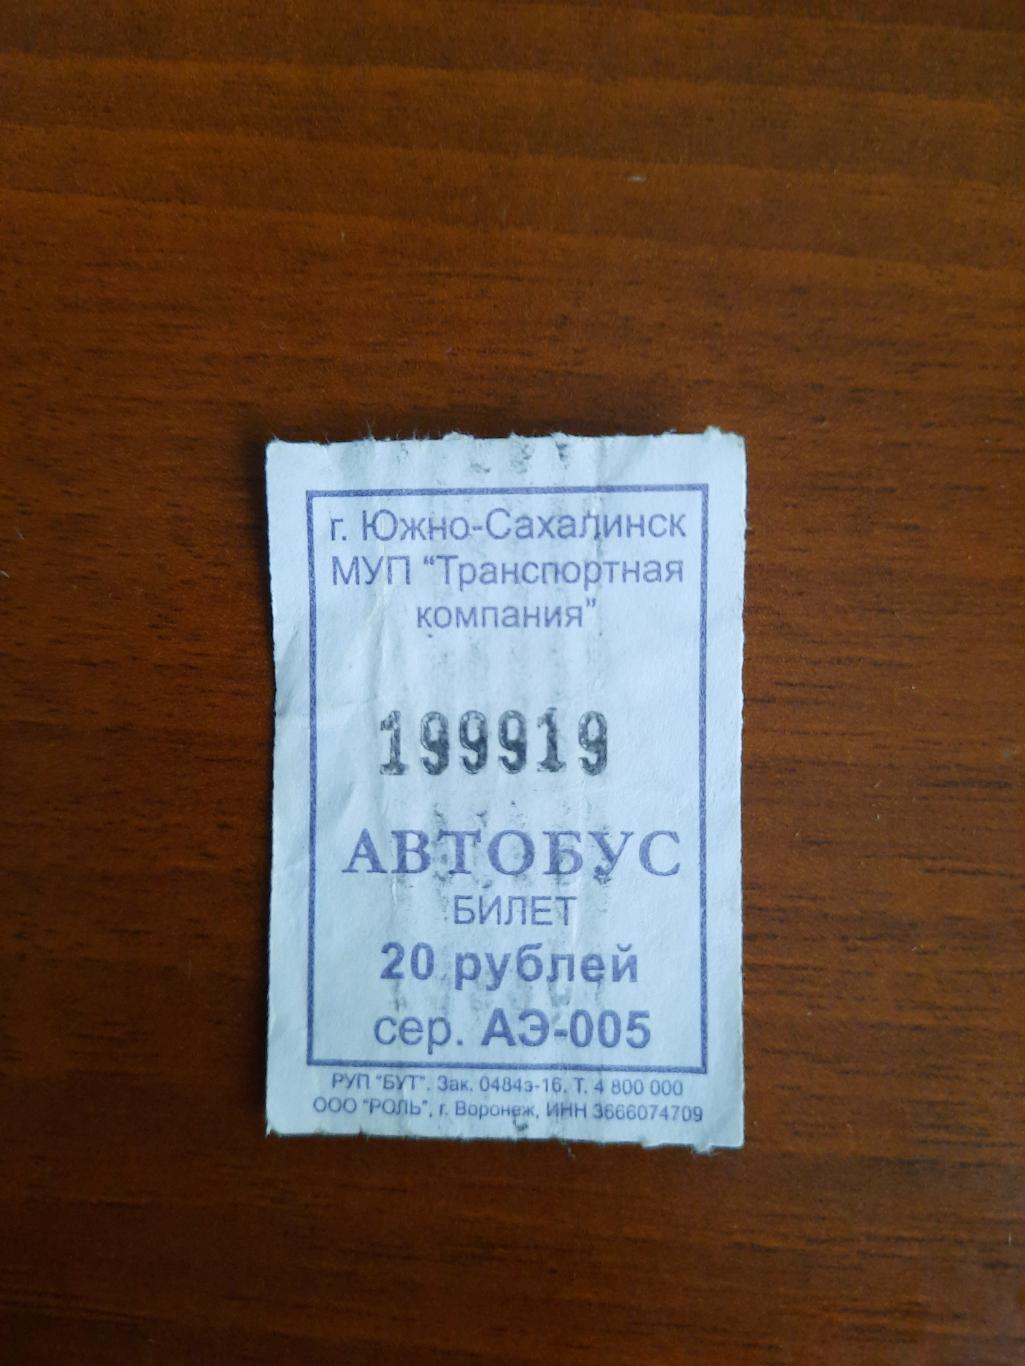 Автобусный билет с интересным номером 199919